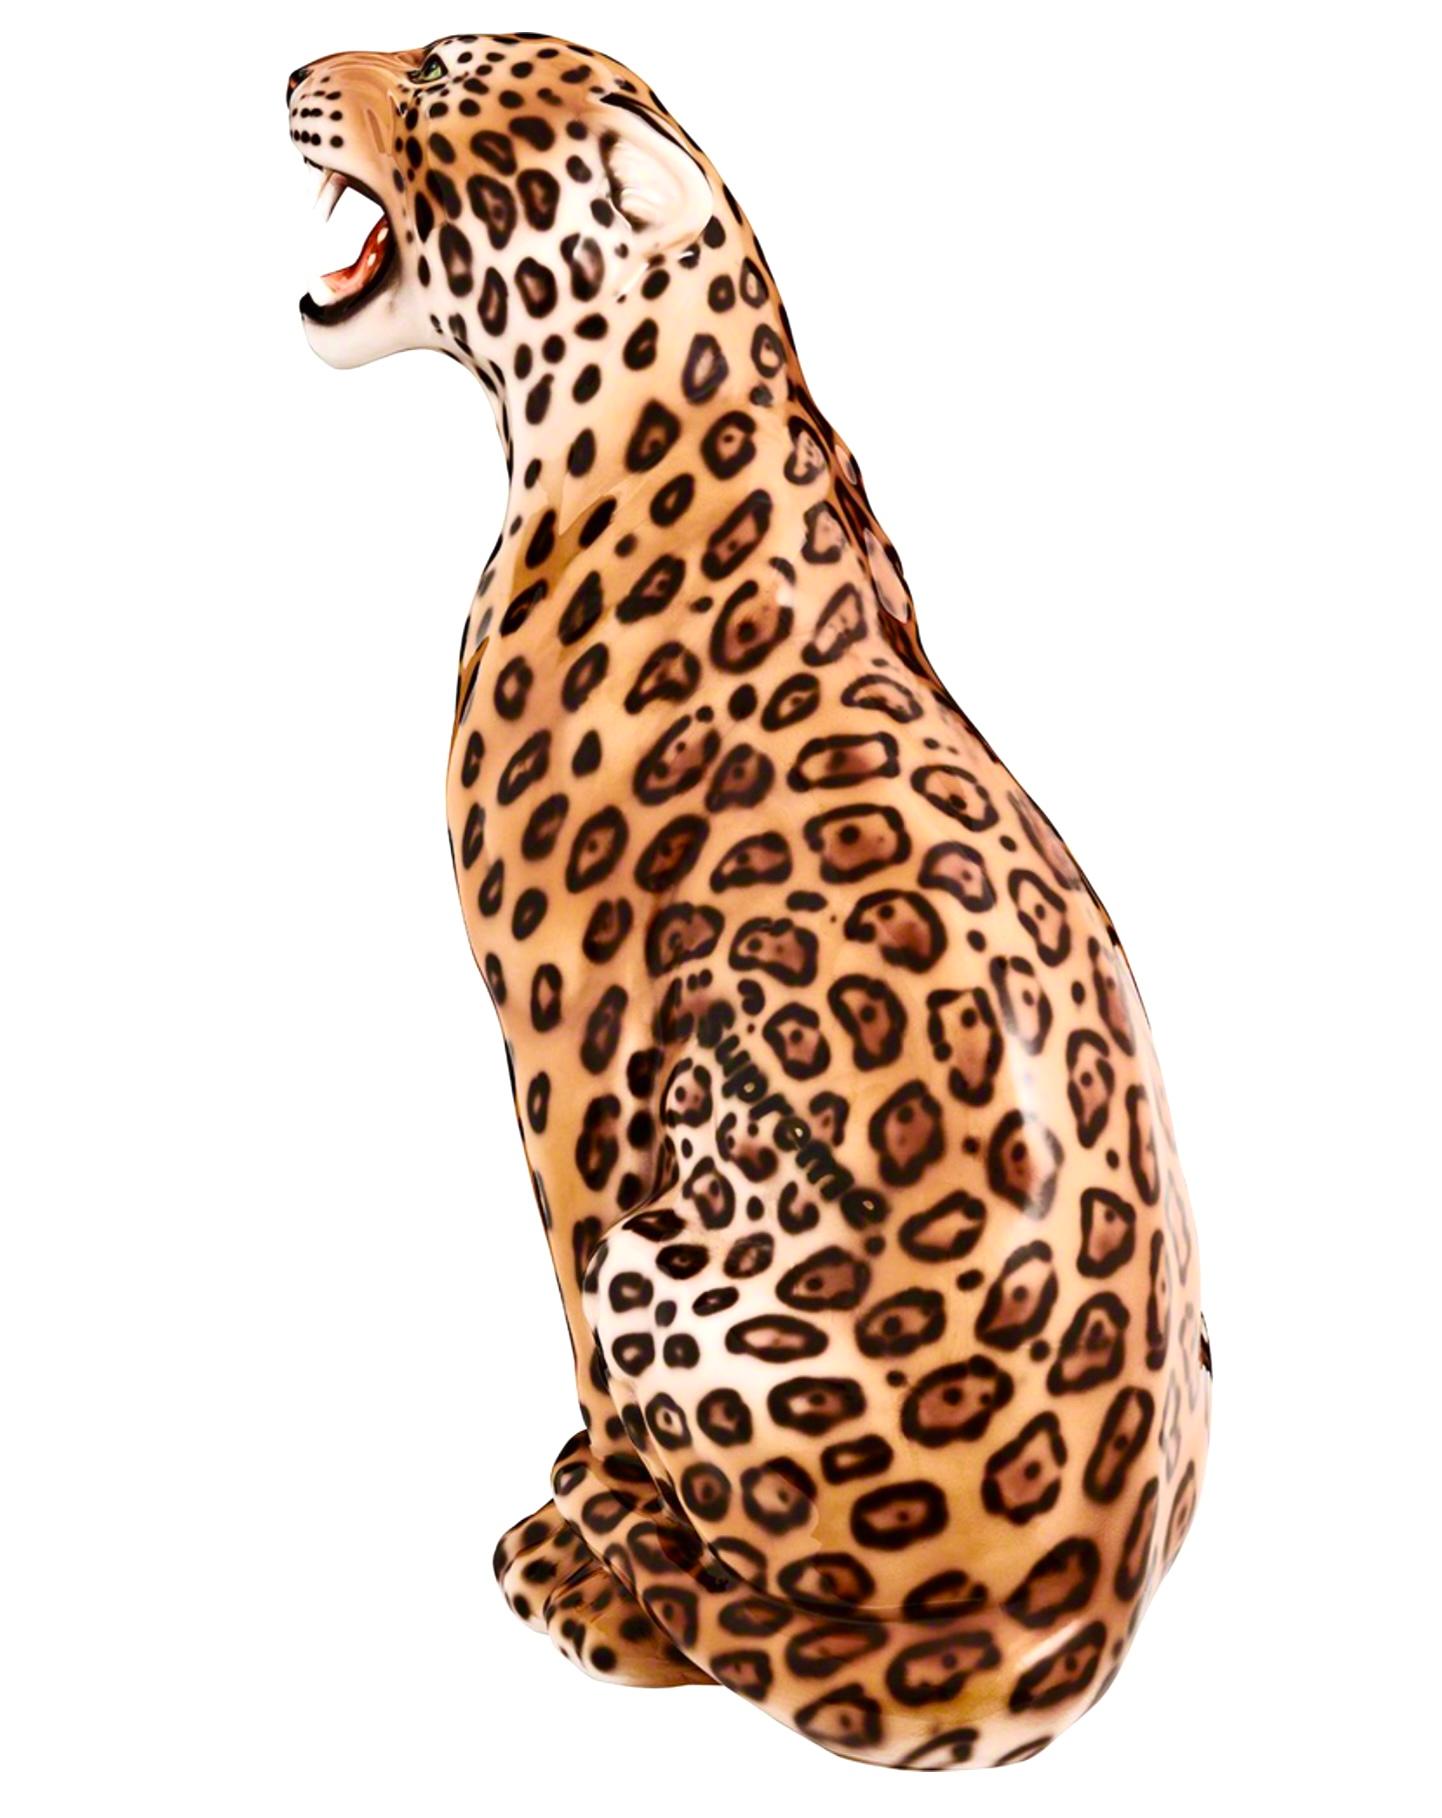 Sculpture suprême de jaguar en porcelaine monumentale peinte à la main, printemps-été 2023.  
Jaguar de 34